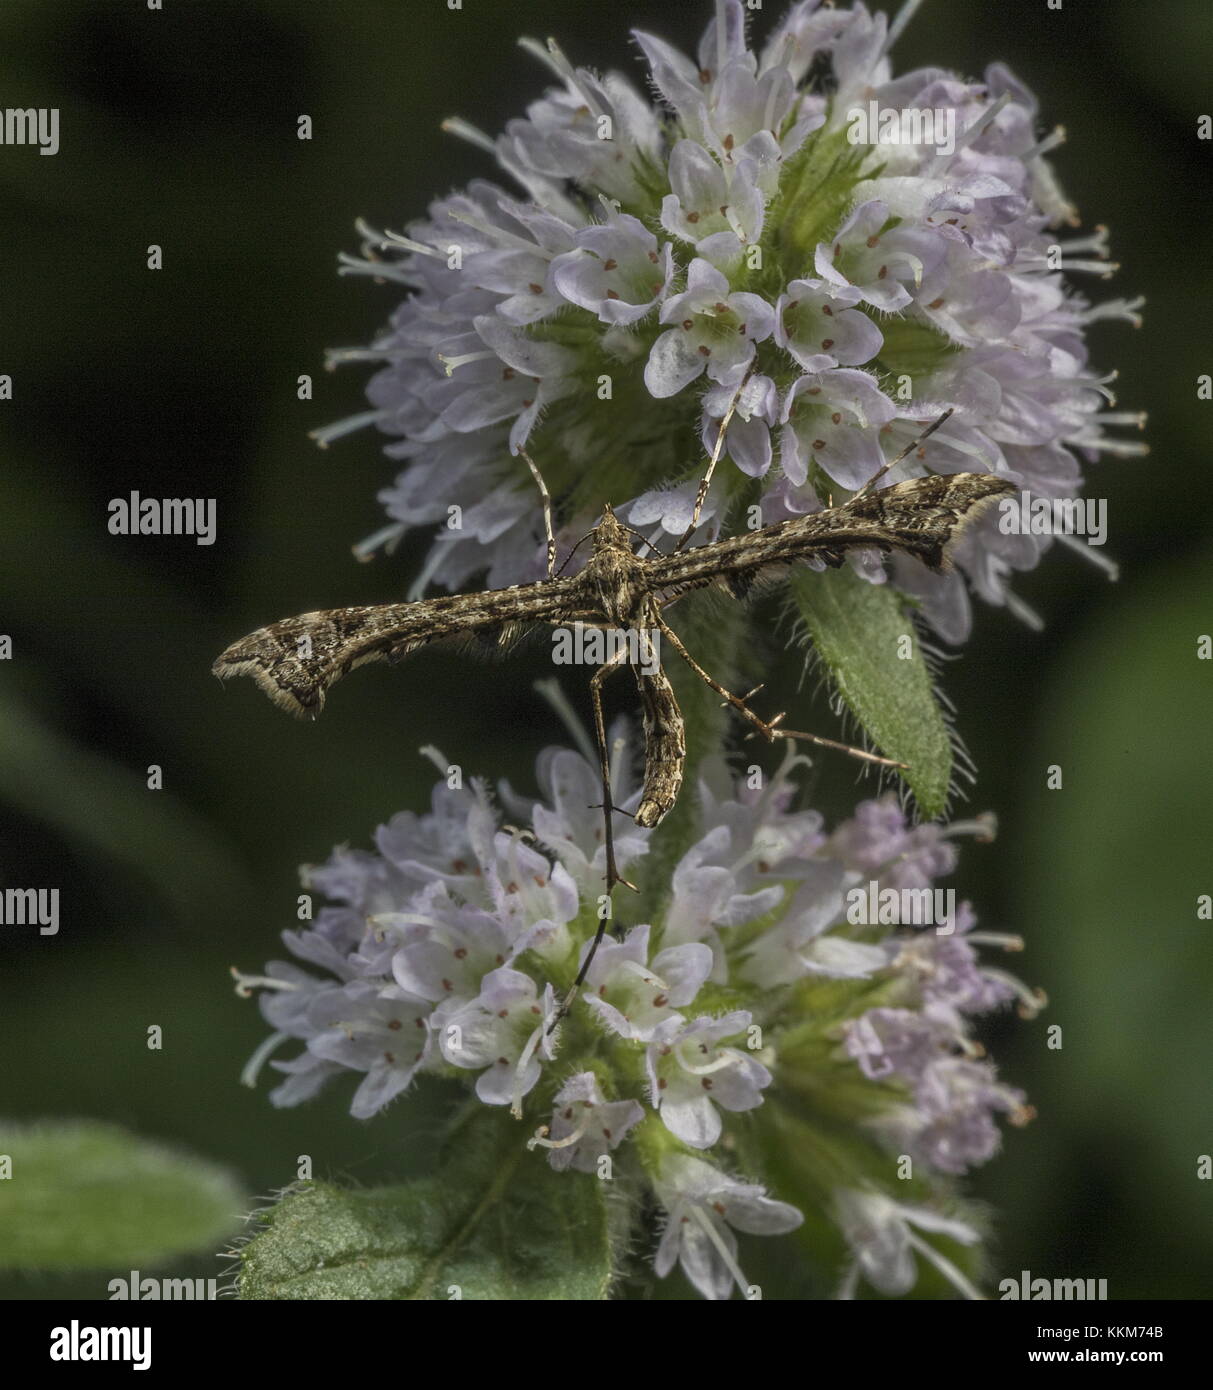 Brindled Plume moth, Amblyptylia punctidactyla, settled on water mint flowers. Stock Photo